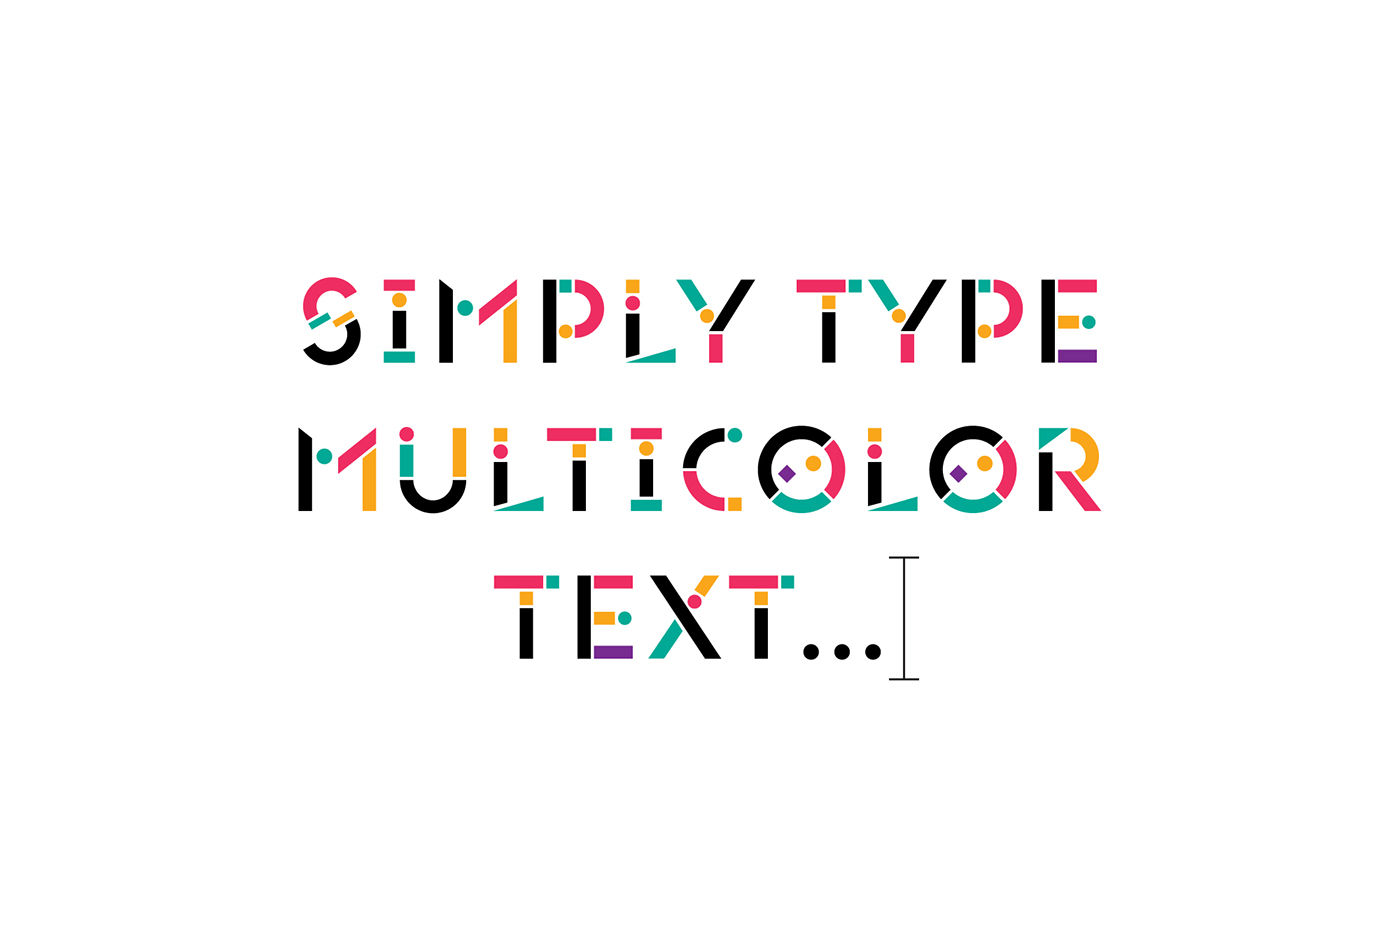 constructivism constructivist multicolor 80s geometry geometric Pop Art color colour font